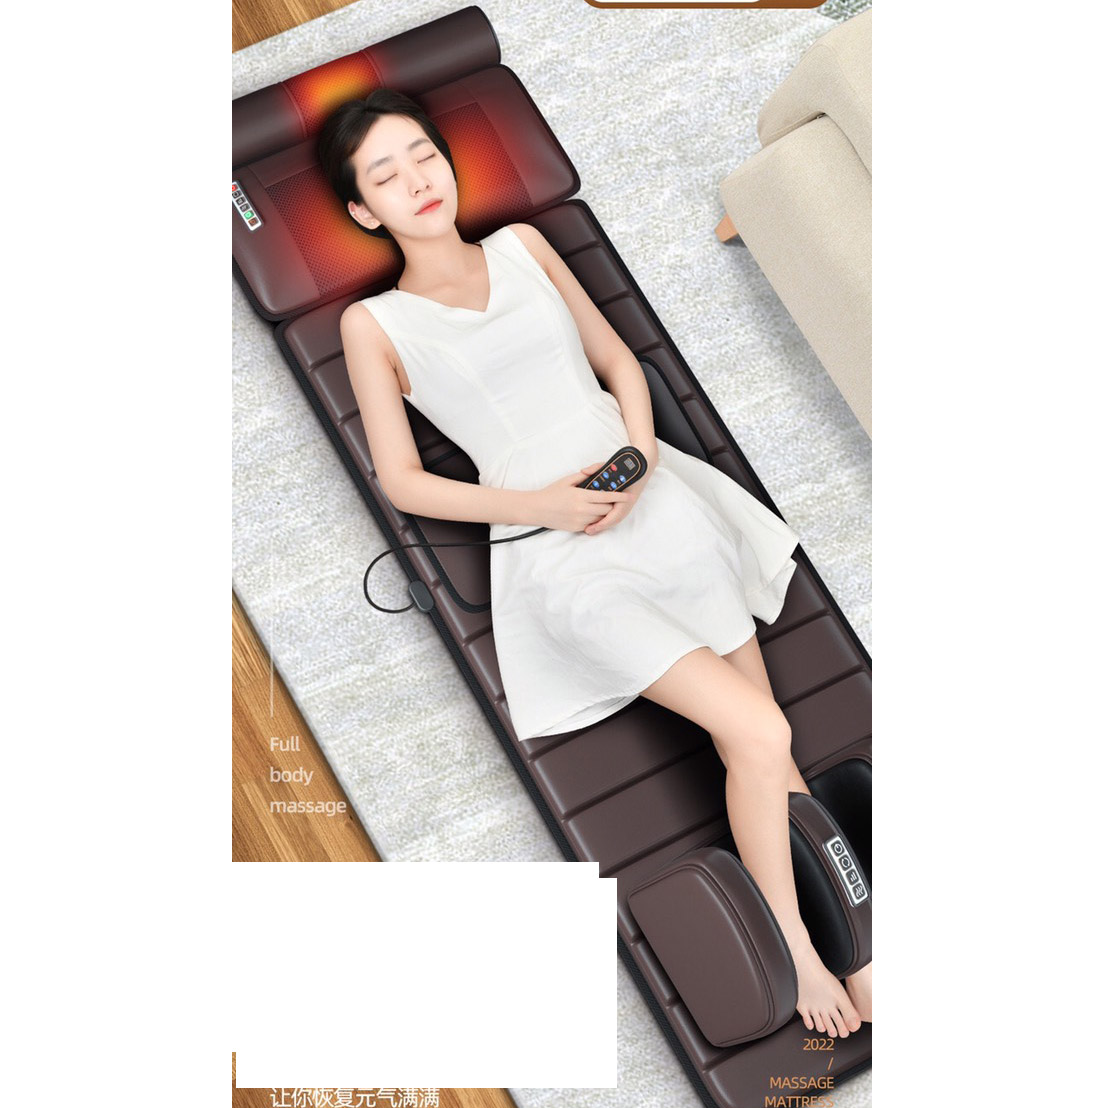 Đệm massage toàn thân kèm massage chân hồng ngoại có remote (Chất liệu PU)